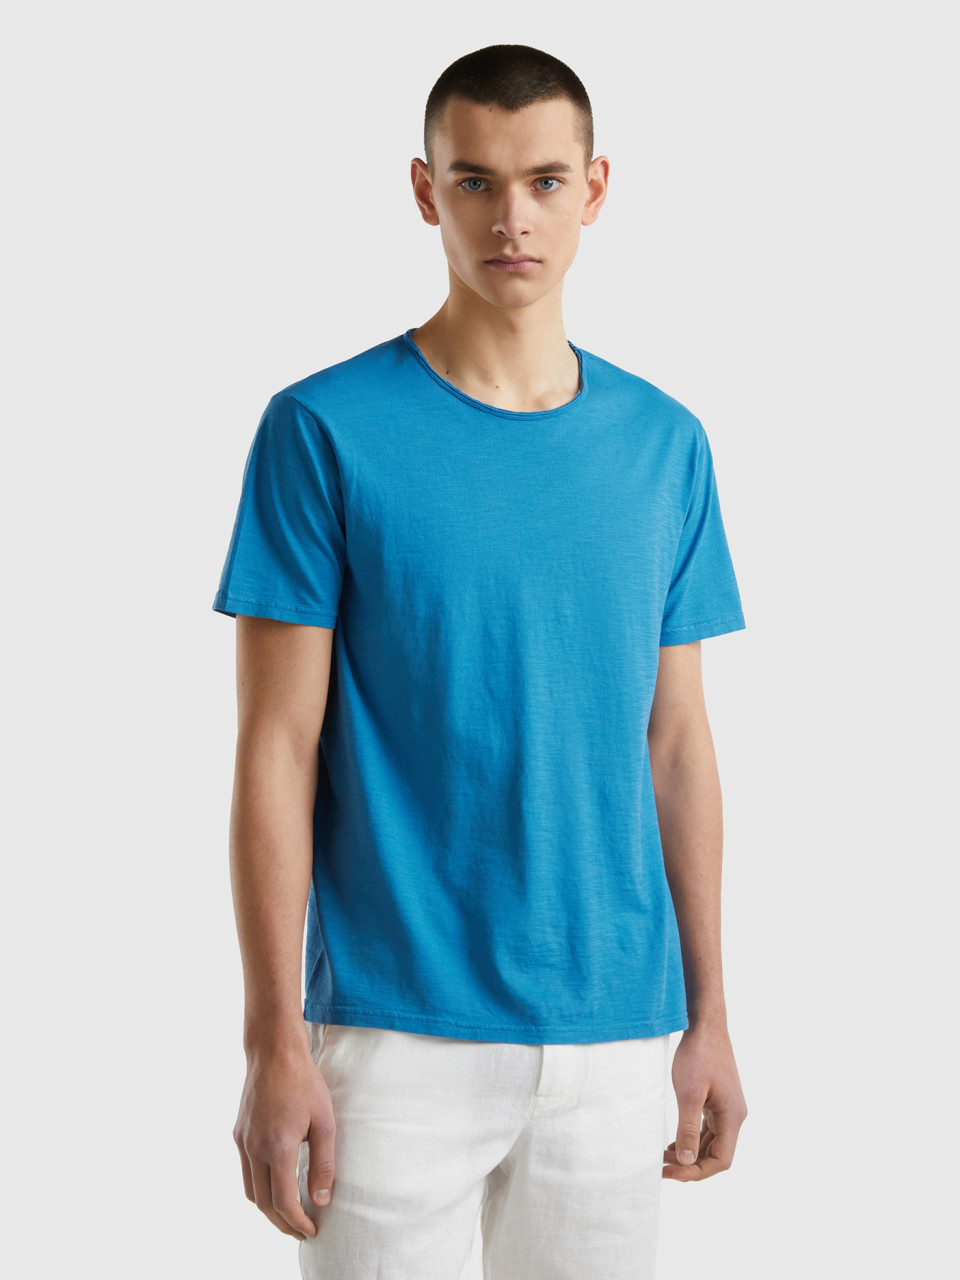 Benetton, Camiseta Azul De Algodón Flameado, Azul, Hombre